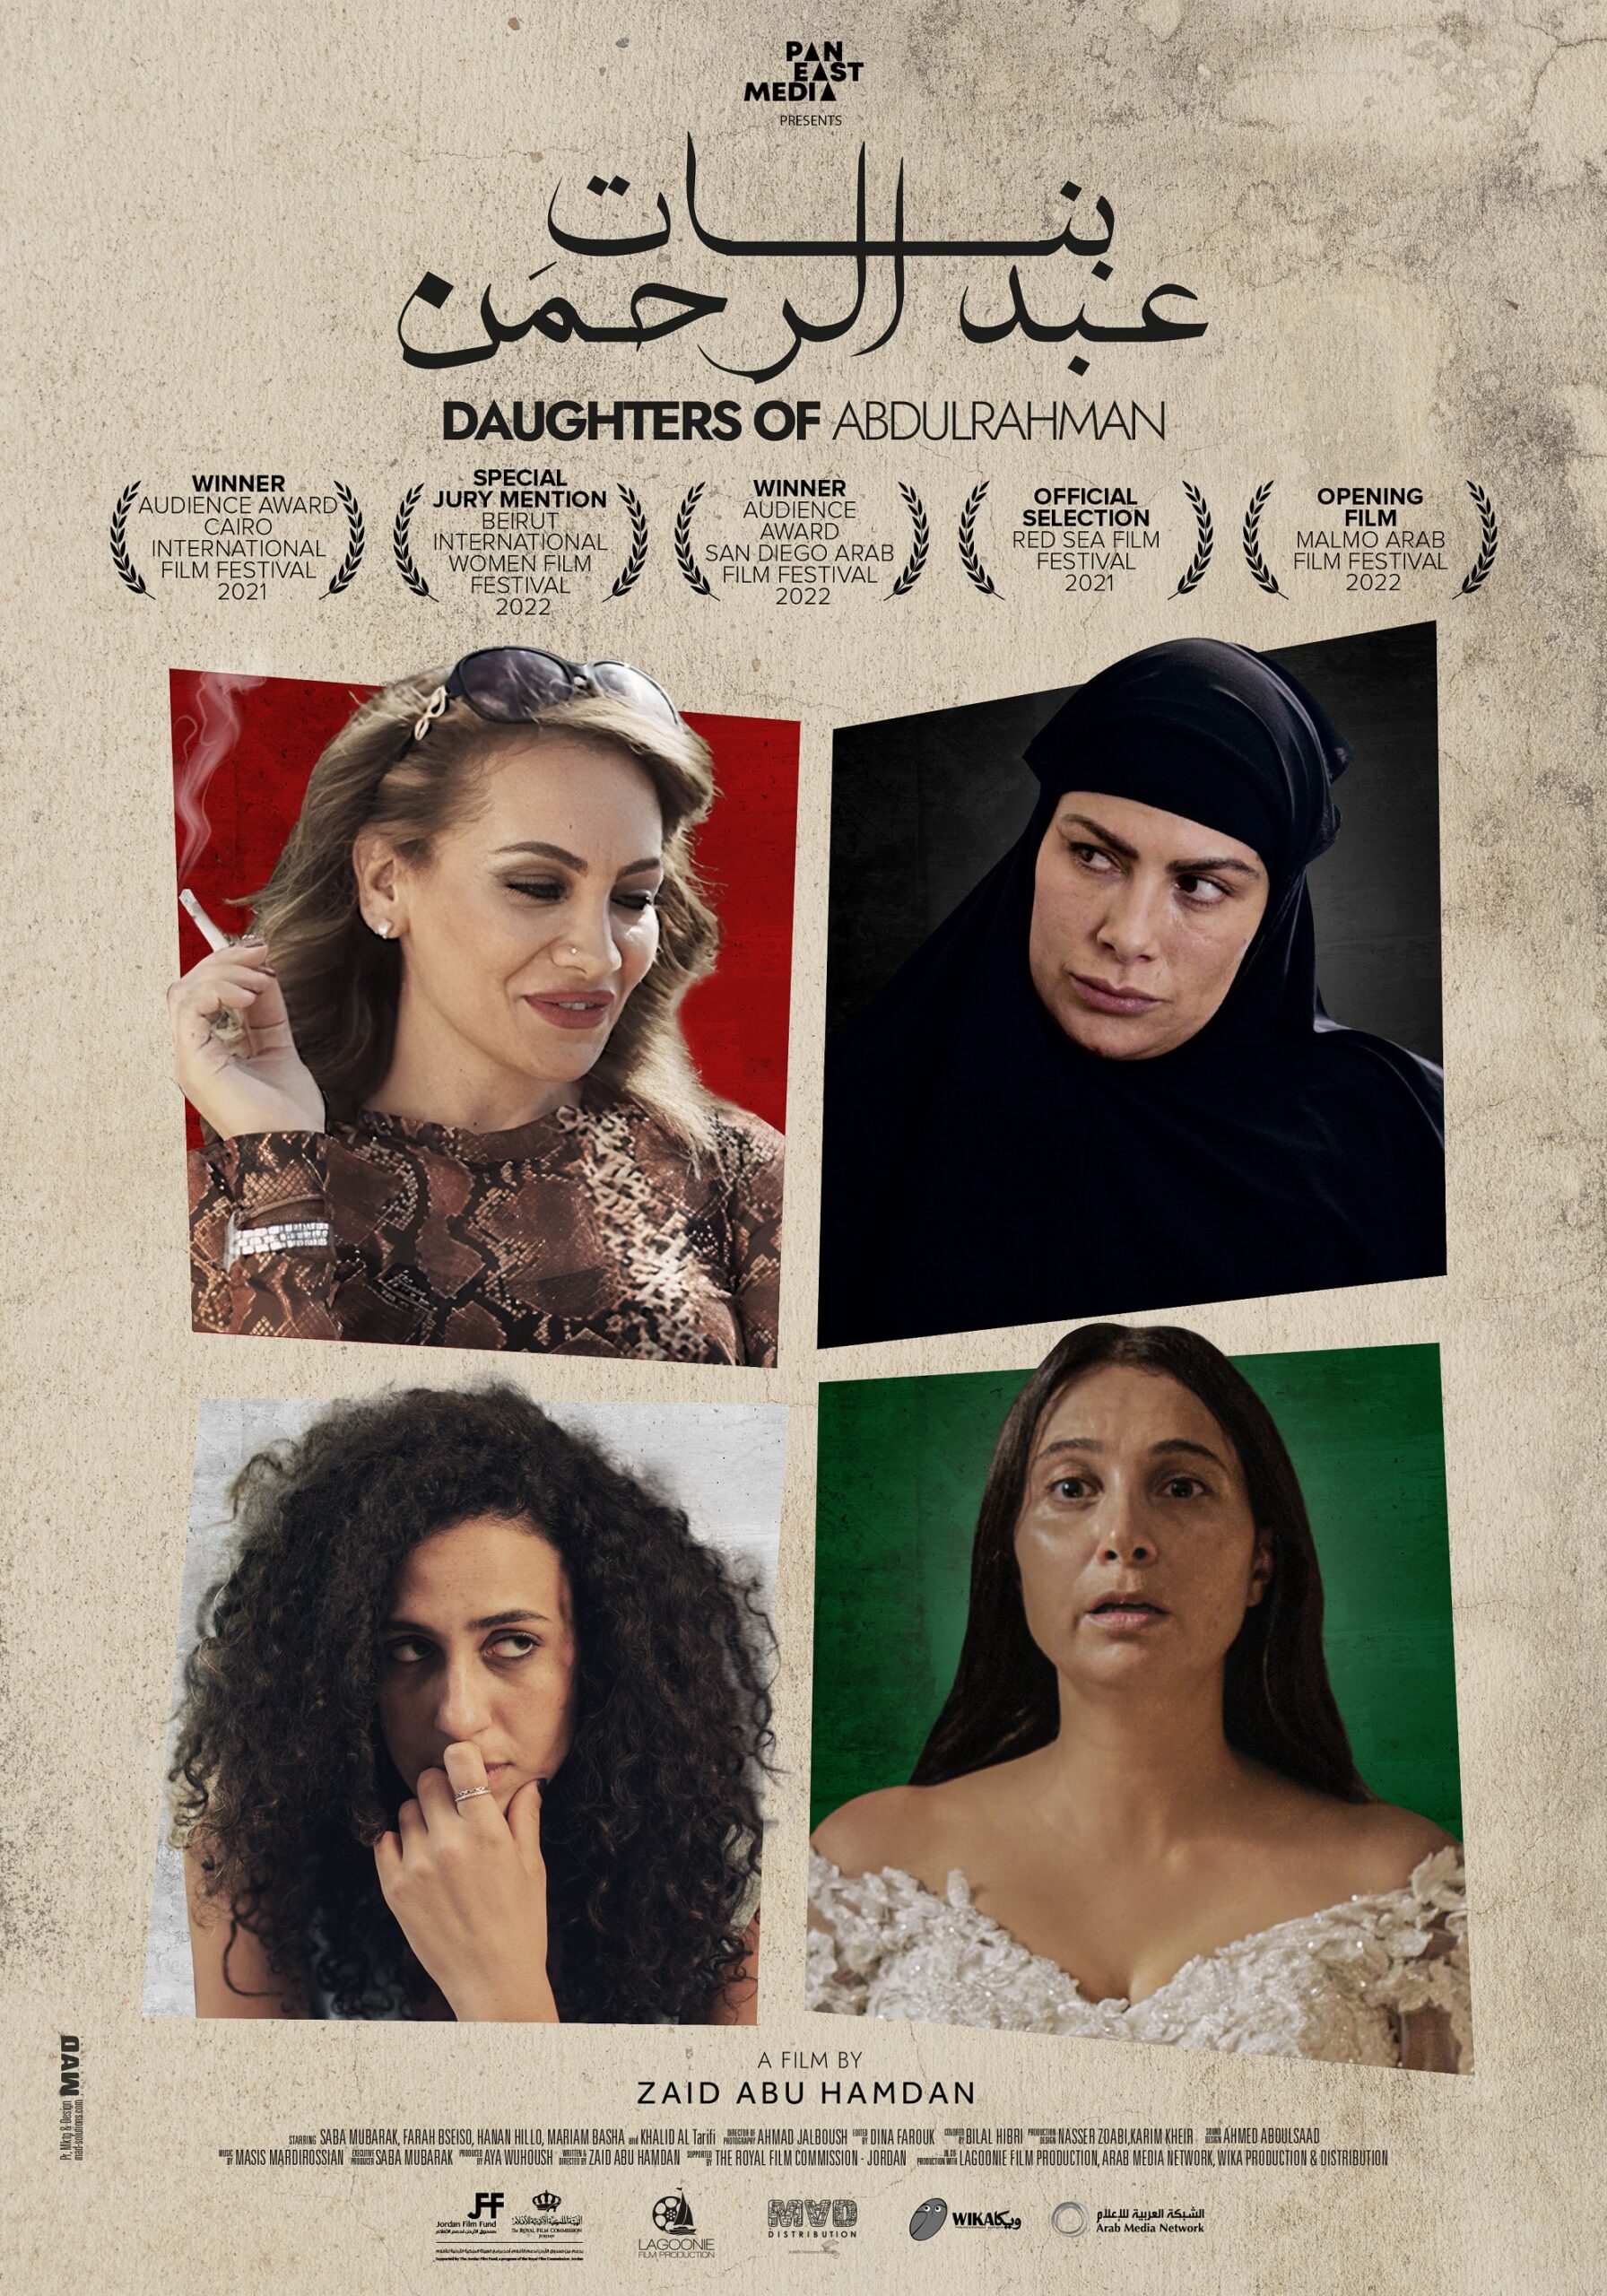 فيلم "بنات عبد الرحمن" يسلط الضوء على أقوى القضايا النسائية في السينما